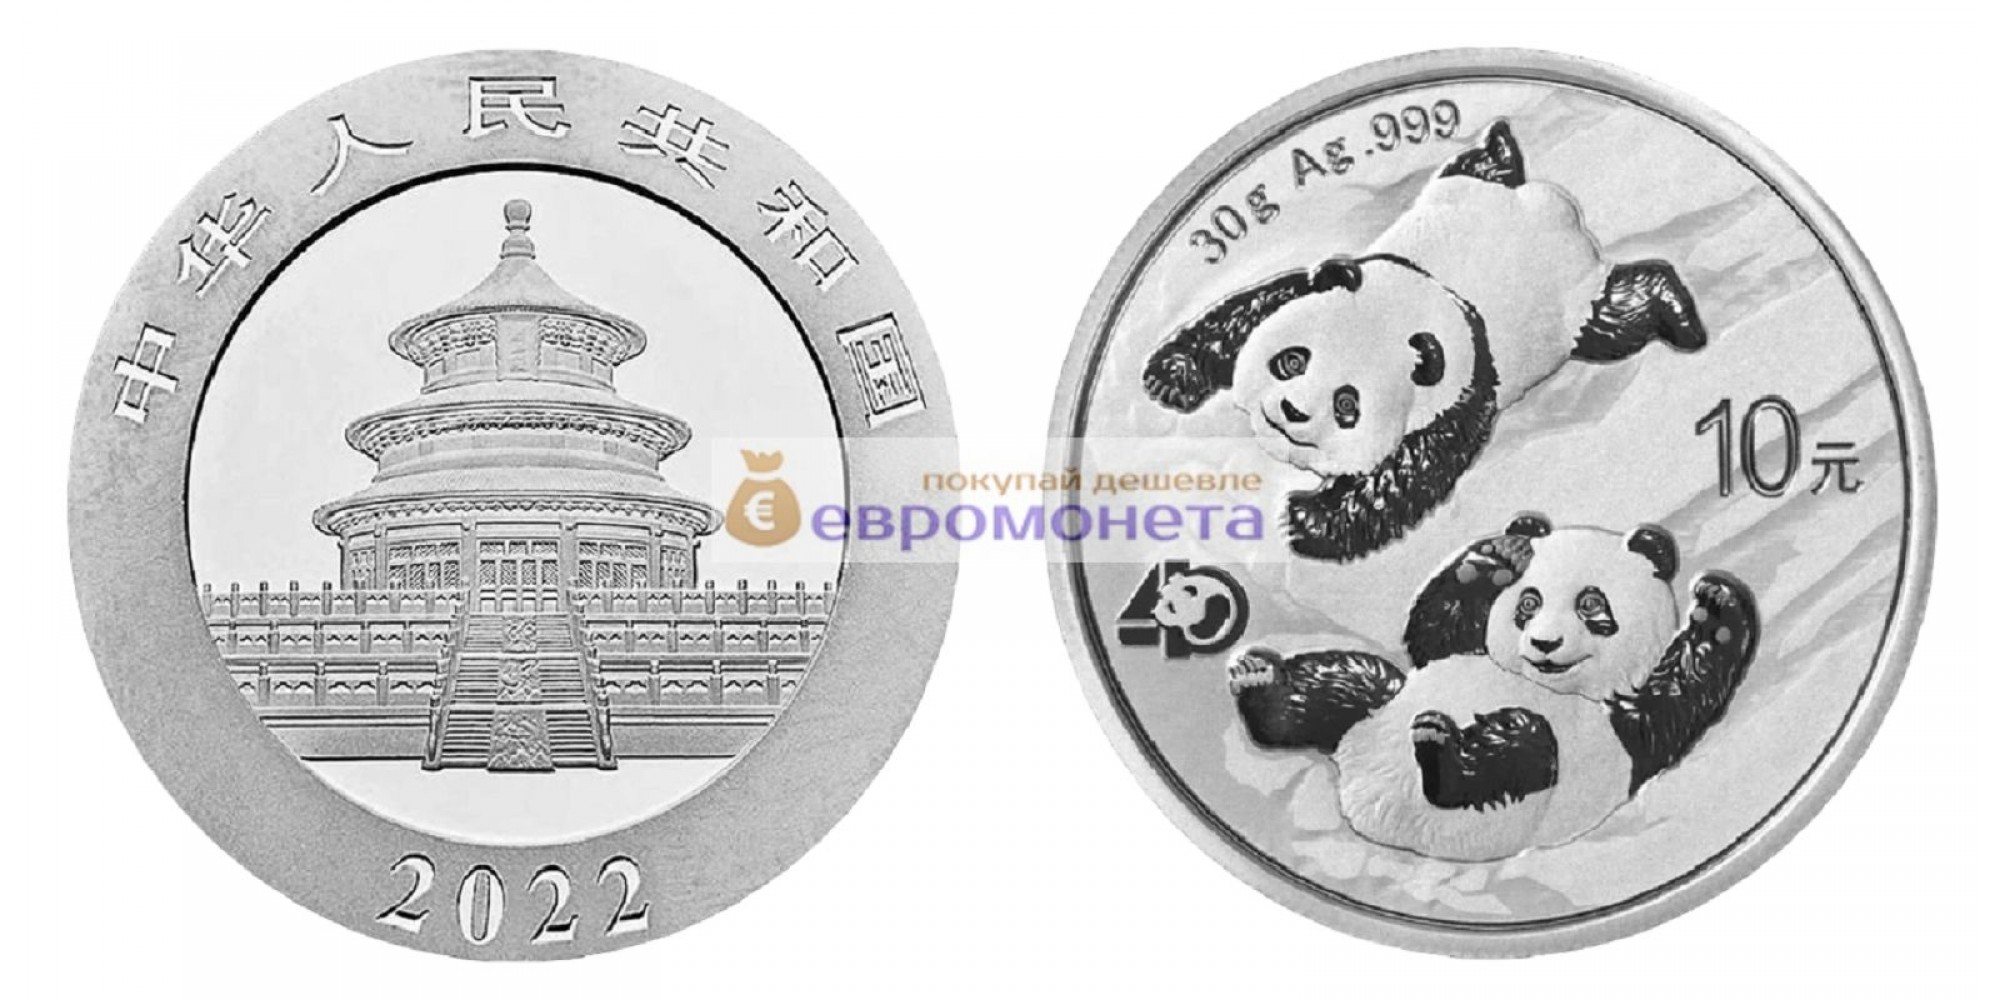 Народная Республика Китай 10 юань 2022 год 40 лет чеканке монет с пандой. Серебро. 30 грамм 999 пробы